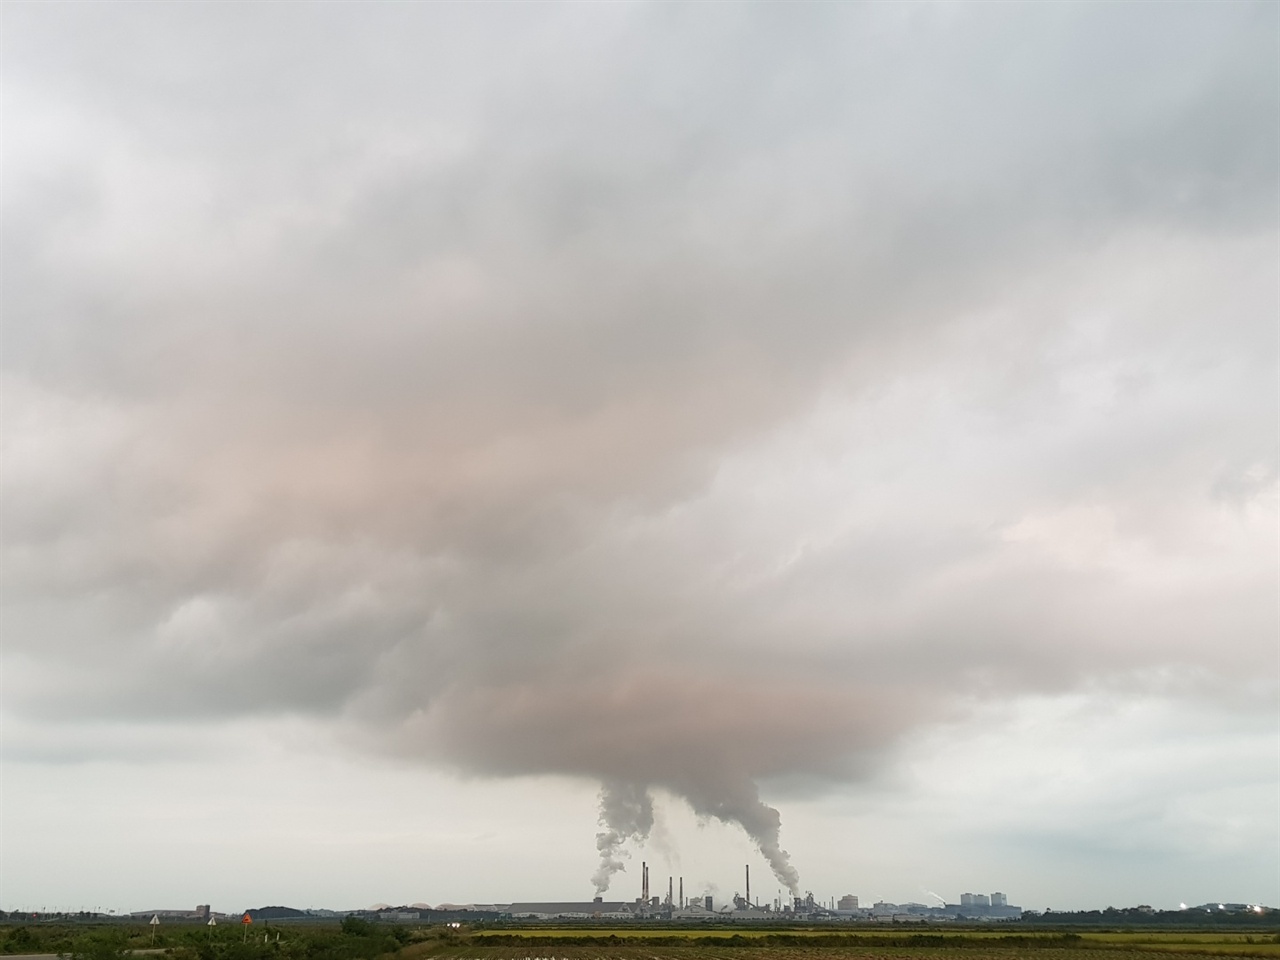 현대제철 당진공장에서 배출되는 굴뚝연기가 구름을 이루고 있는 모습. 바람이 덜 한 날이면 이런 모습을 자주 확인할 수 있다.(사진출처 독자제공) 